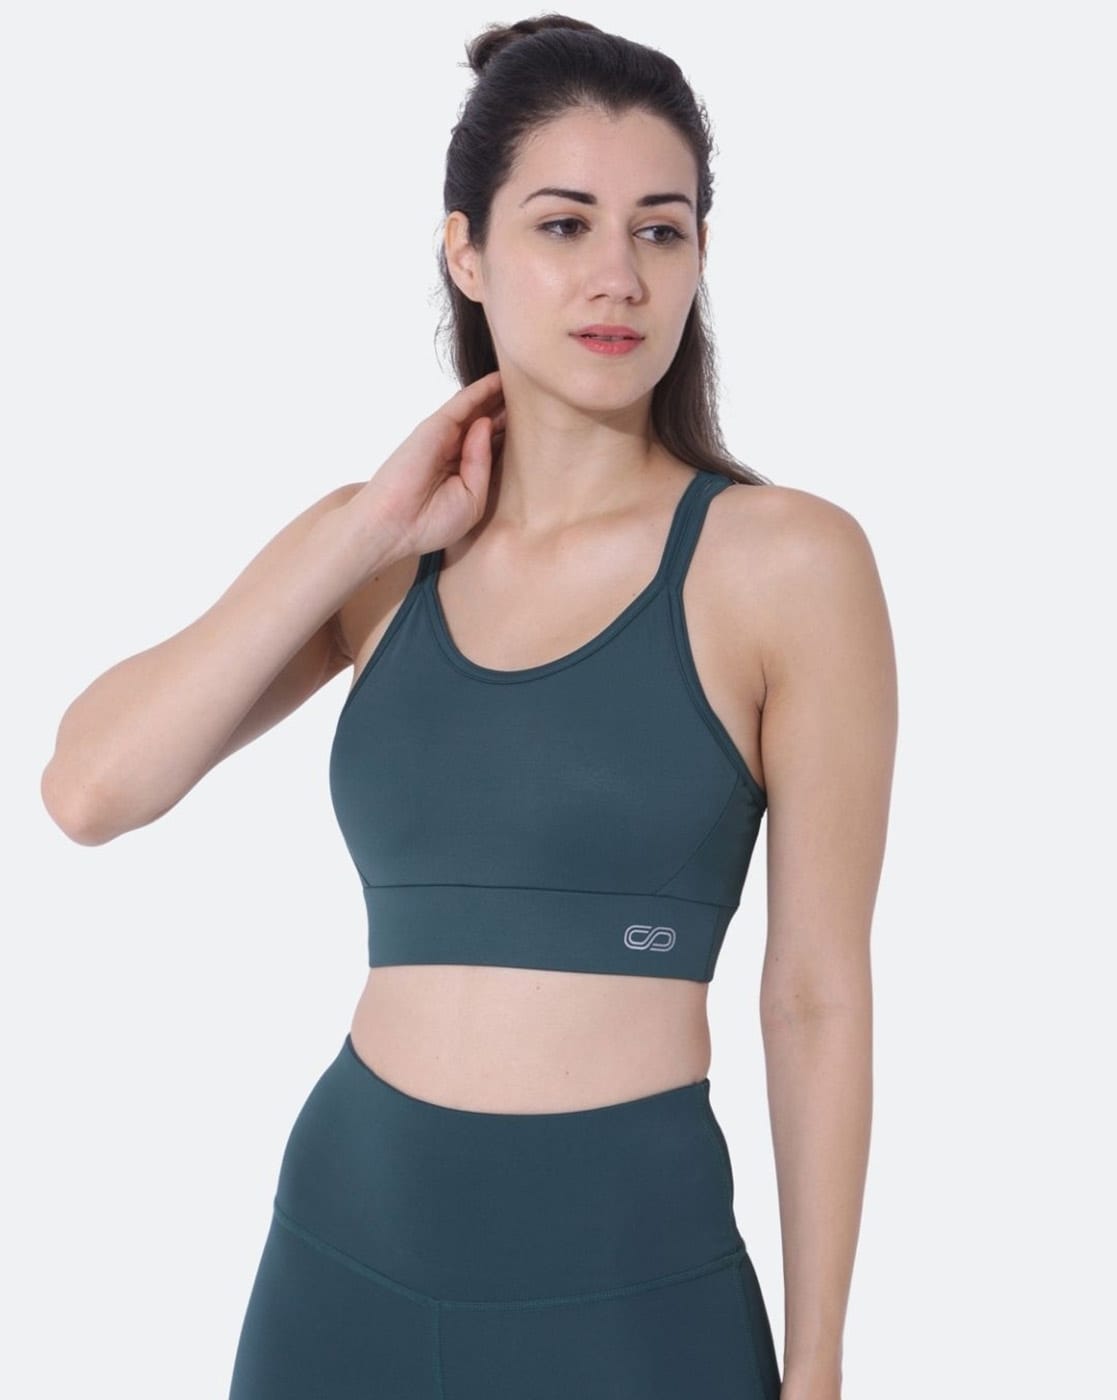 Buy Teal Green Bras for Women by SILVERTRAQ Online